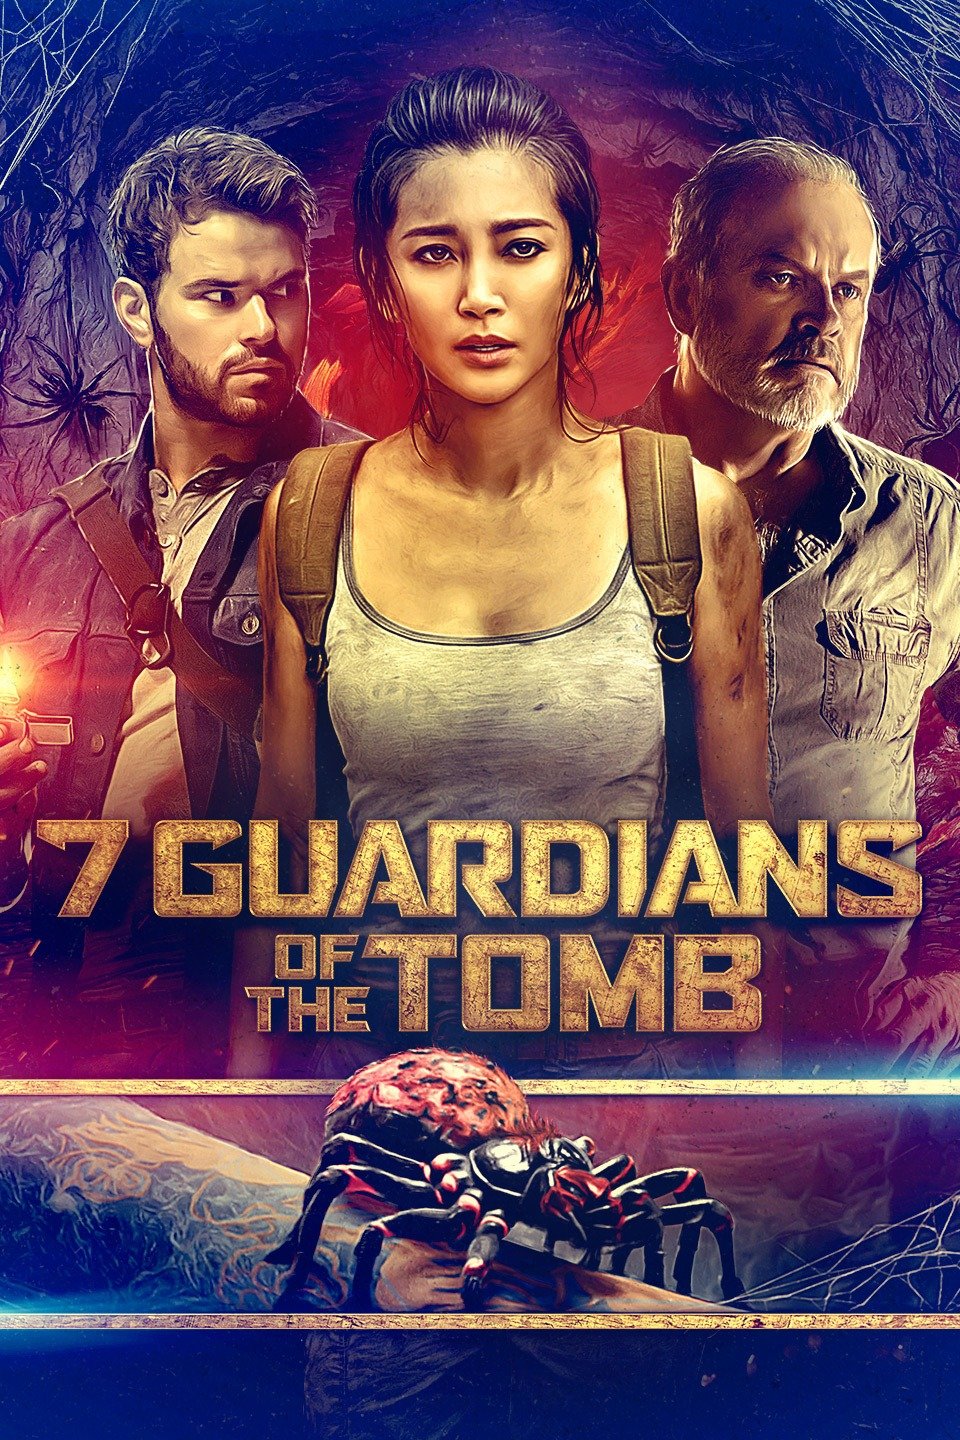 [MINI Super-HQ] 7 Guardian Of The Tomb (2018) ขุมทรัพย์โคตรแมงมุม [1080p] [พากย์ไทย DTS + เสียงอังกฤษ DTS] [บรรยายไทย + อังกฤษ] [เสียงไทย + ซับไทย] [ONE2UP]